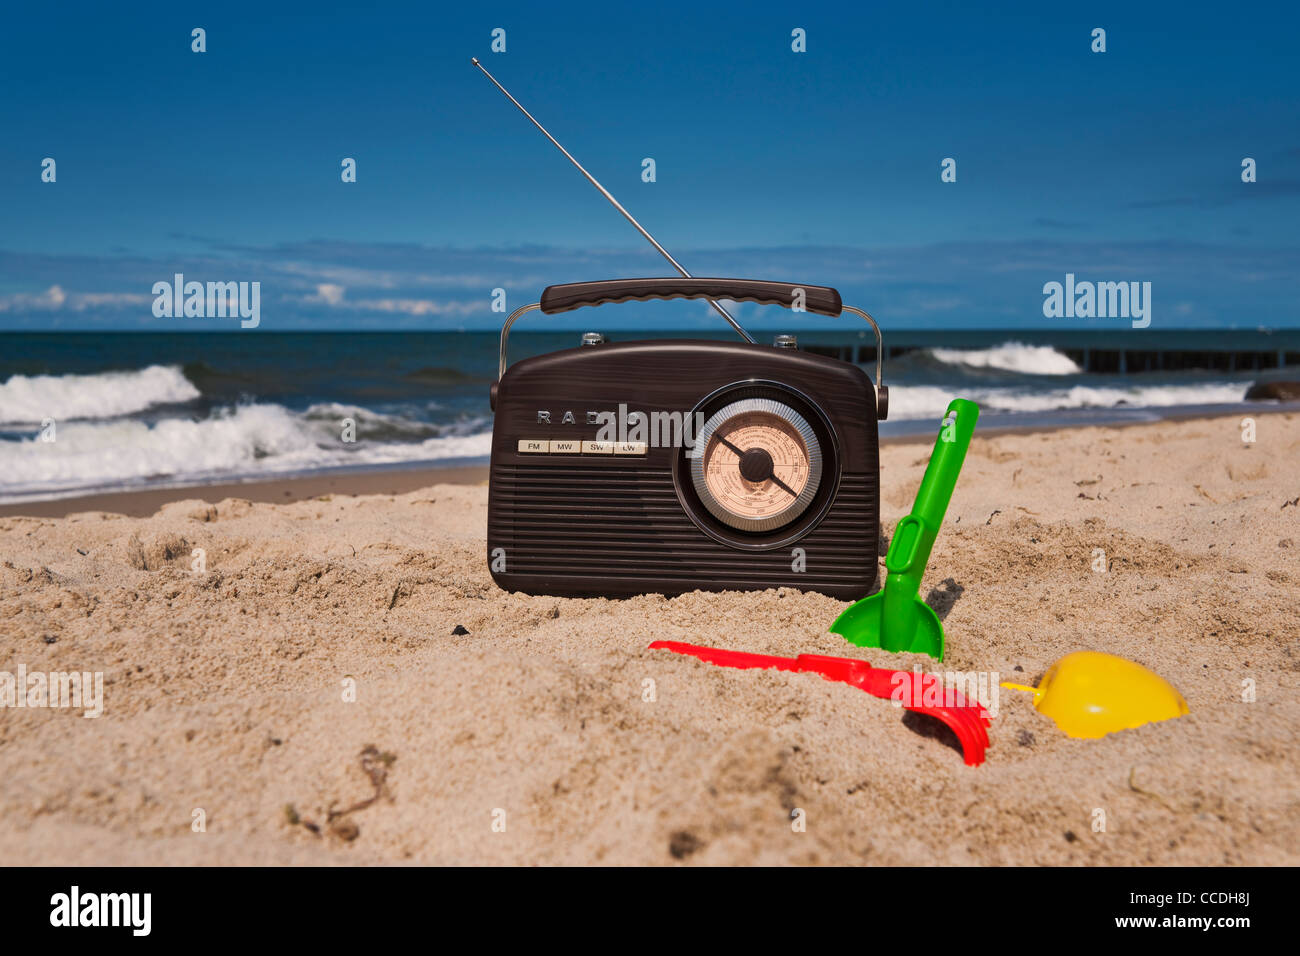 Ein Radio Steht bin Sandstrand, Strandspielzeug so Lebenswege | ein Radio ist am Sandstrand, Spielzeug für den Strand entlang Stockfoto